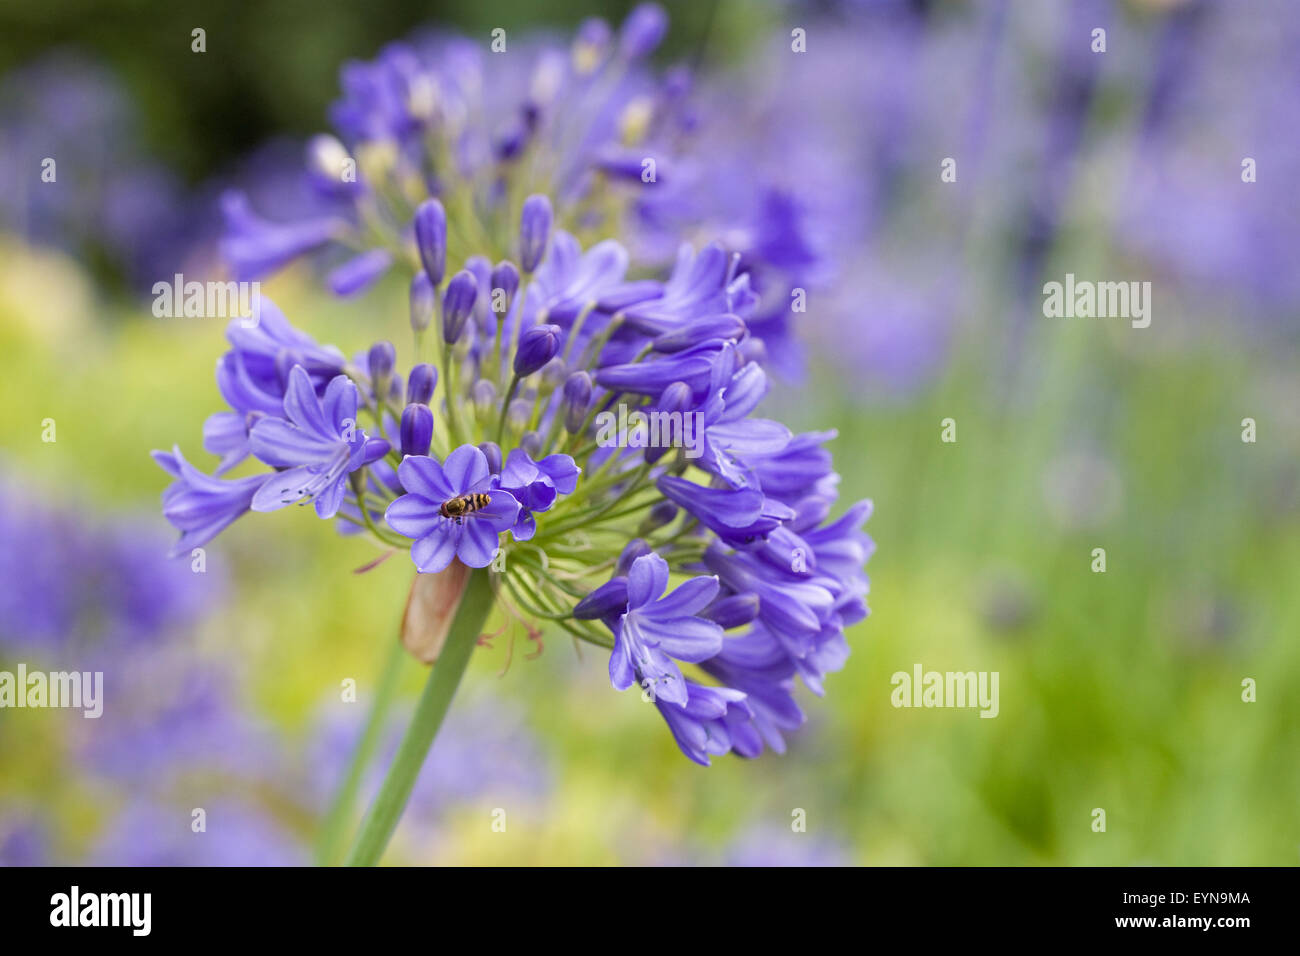 Agapanthus 'Zella Thomas' flowers Stock Photo - Alamy